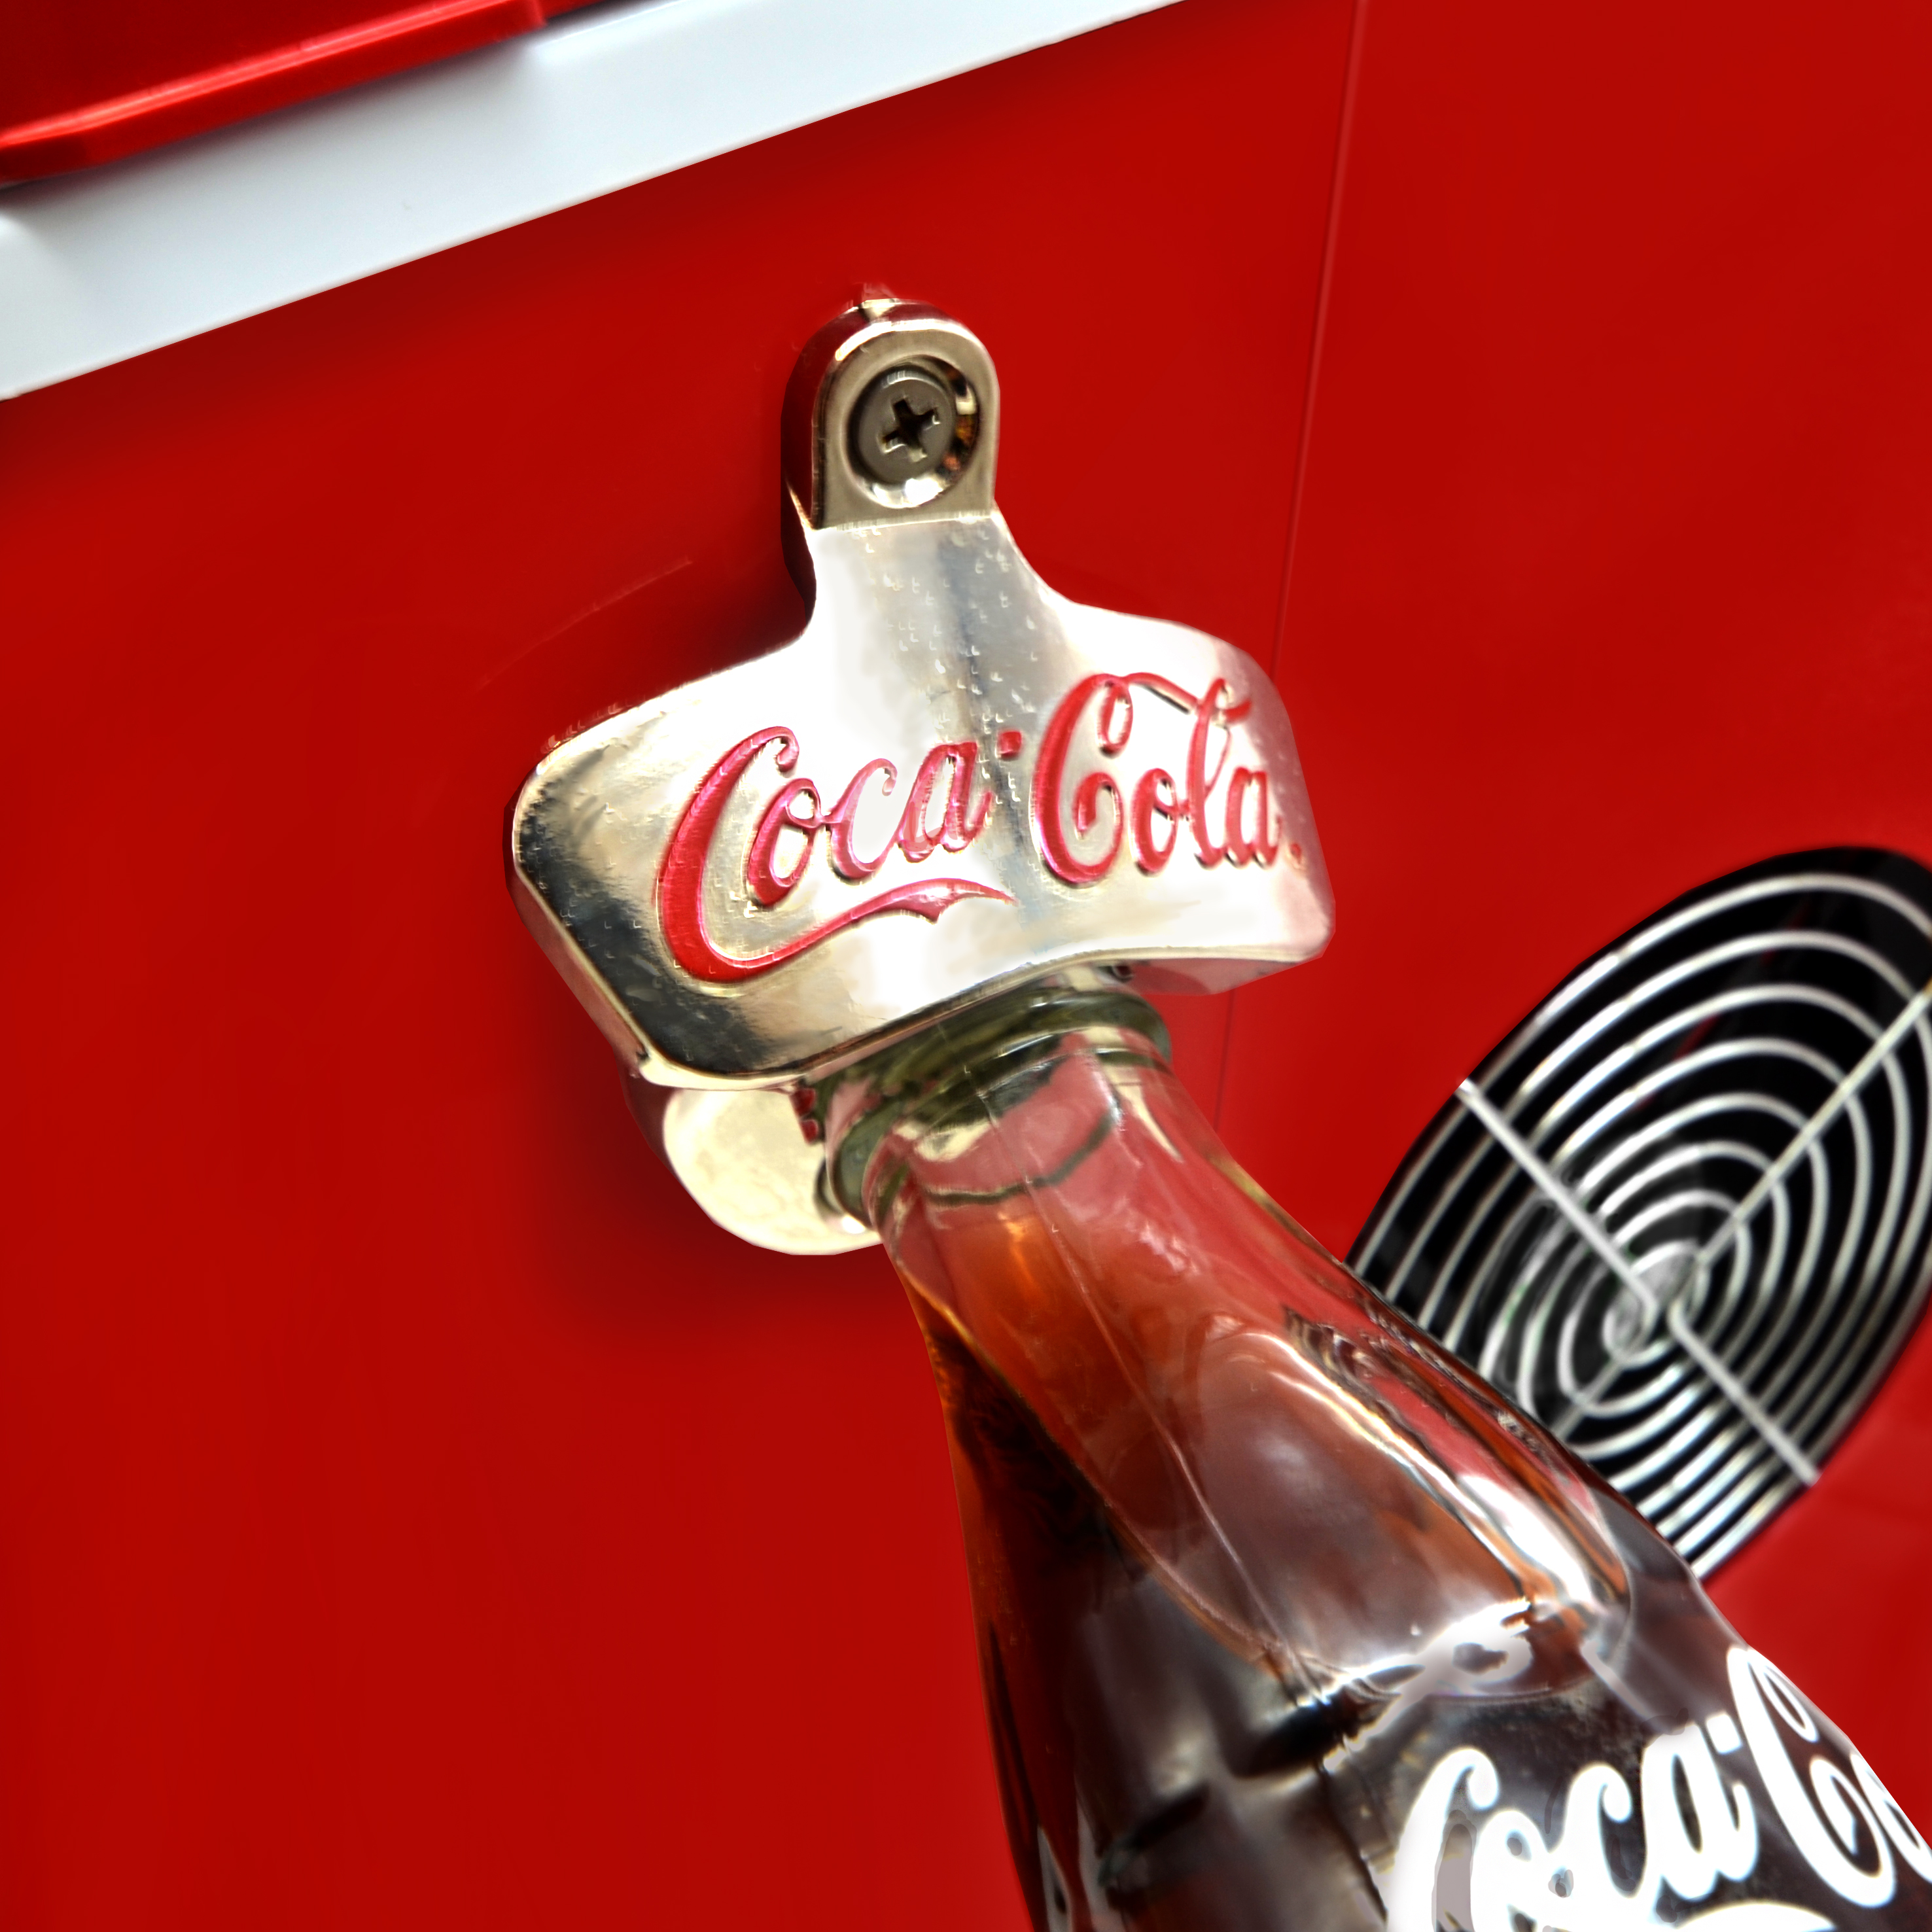 SALCO Coca-Cola Eiswürfelmaschine, leise, 12 2 rot) Eiswürfelmaschine Ice Maker, Eiswürfelgrößen Selbstreinigend, Watt, (100 kg